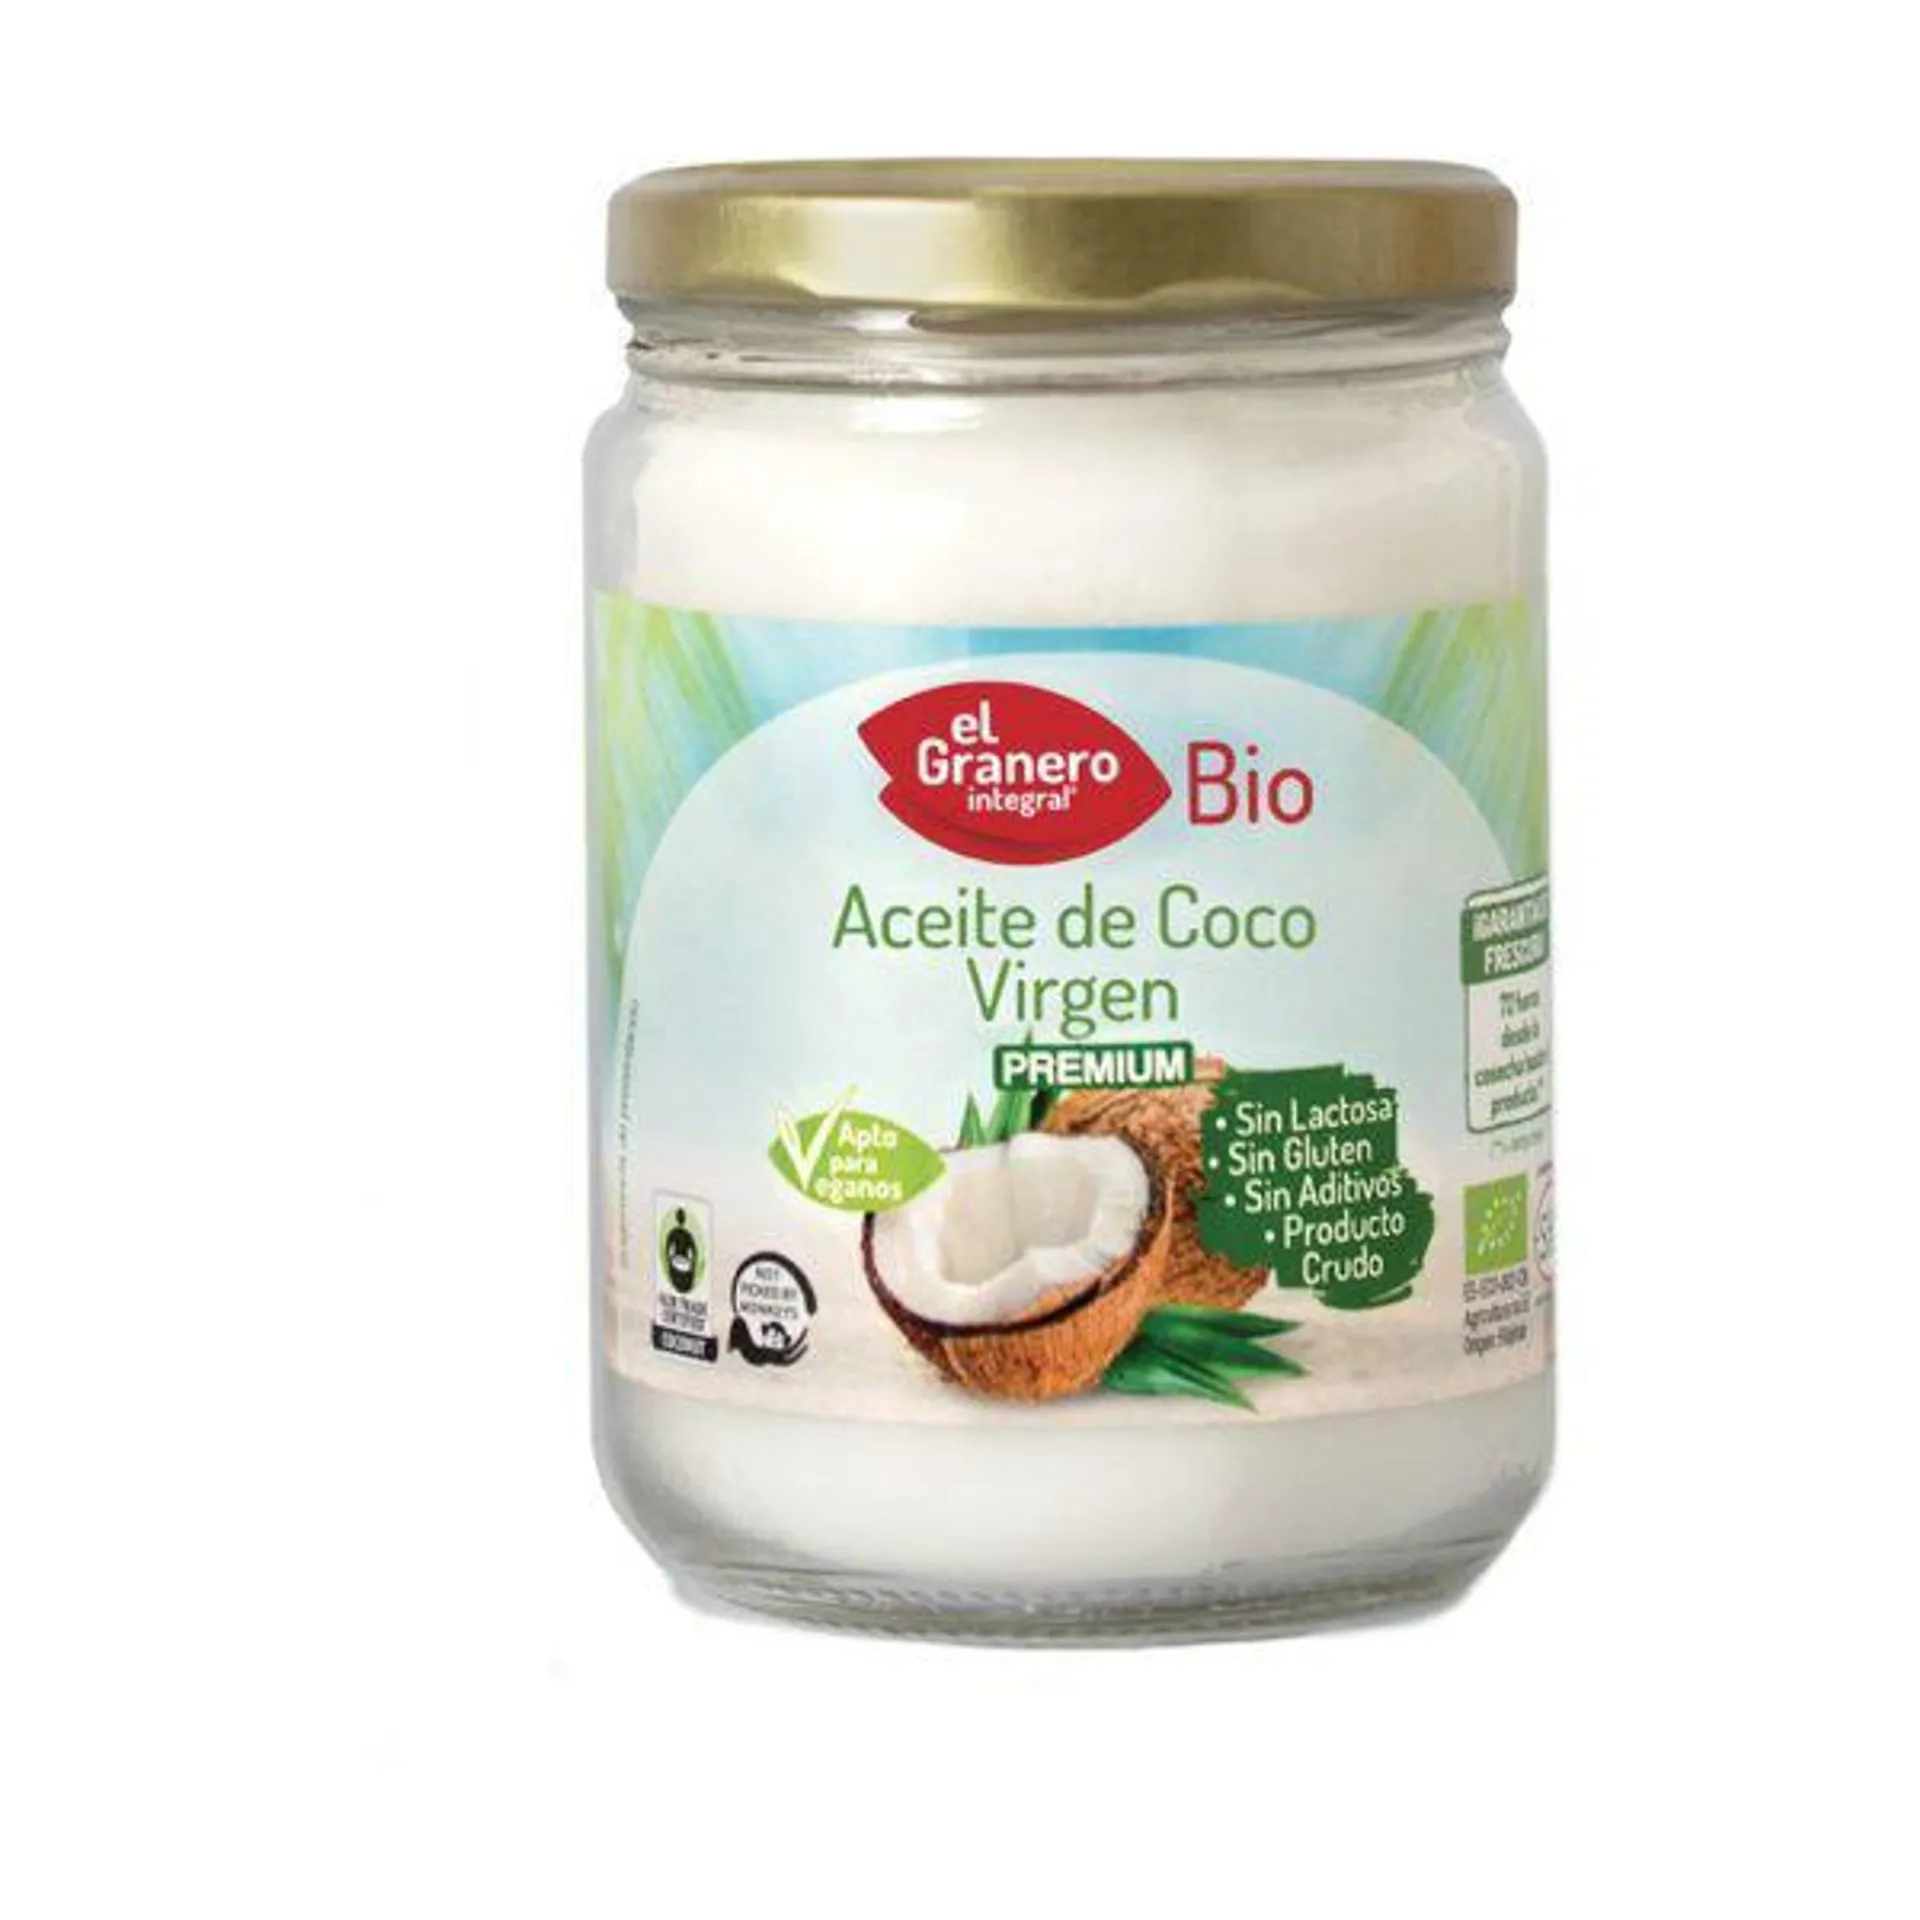 Aceite de Coco Virgen Bio (500 ml) – El Granero Integral